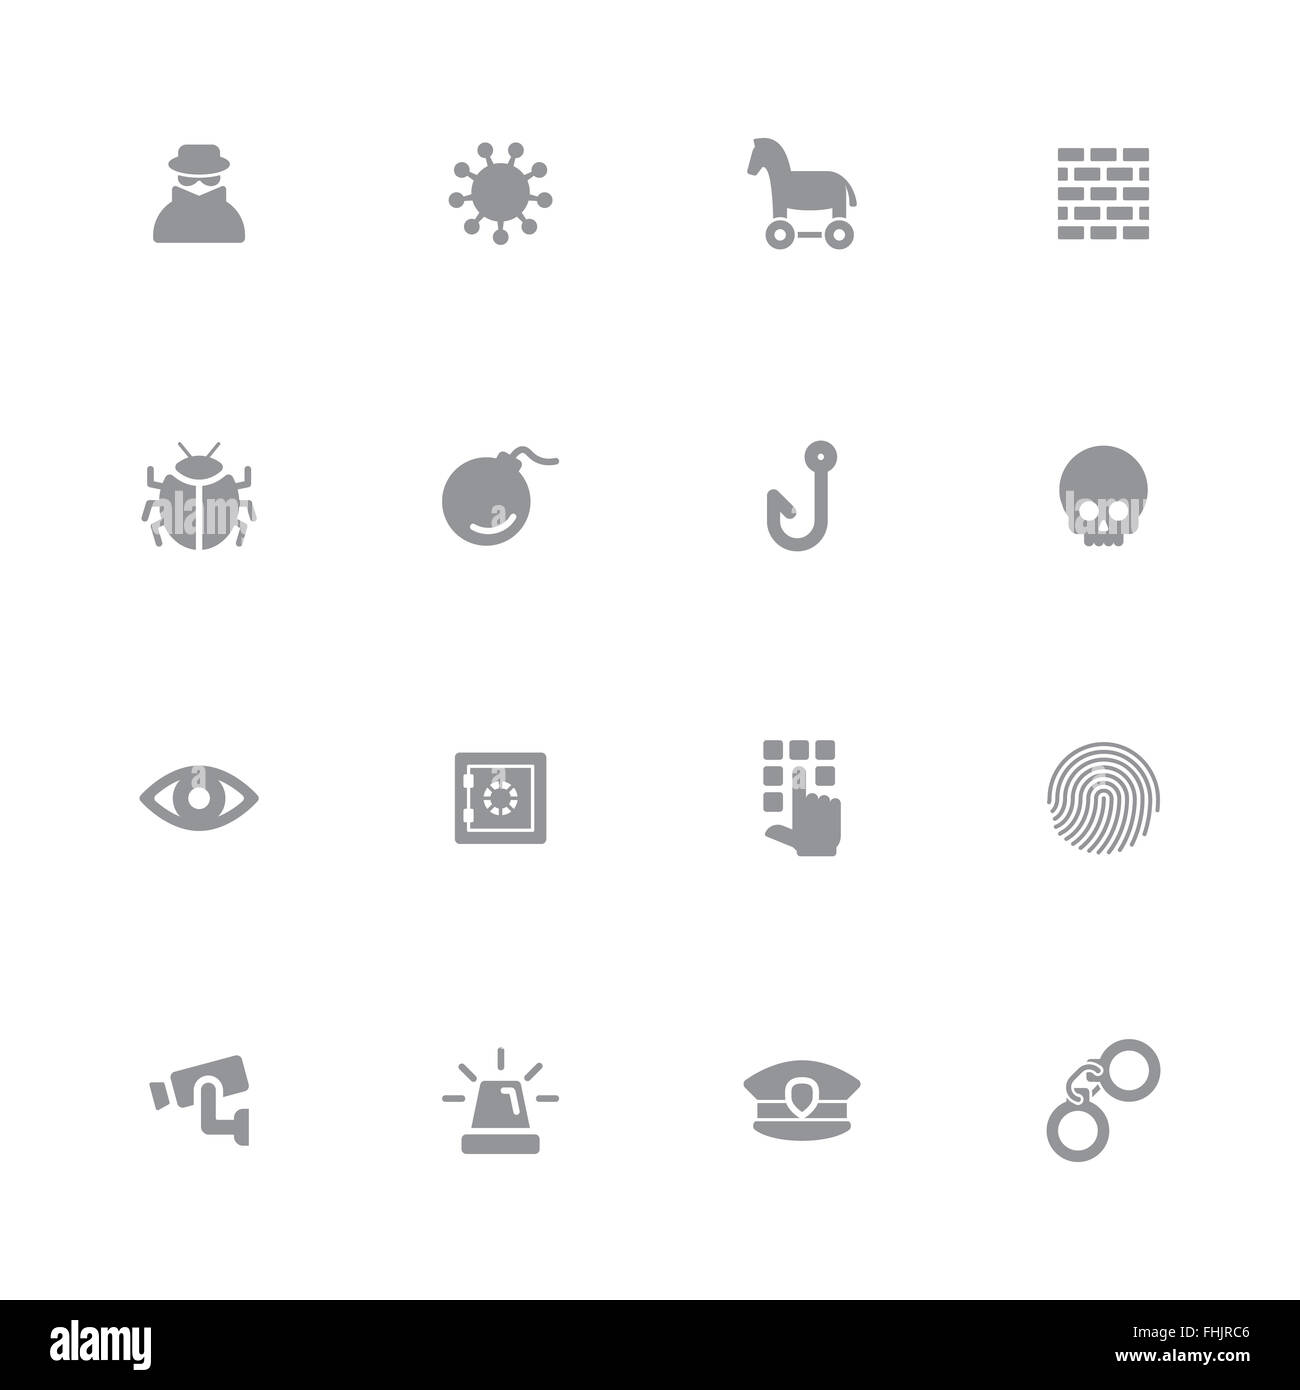 [JPEG] télévision simple gris icon set 7 pour la conception web, l'interface utilisateur (IU), l'infographie et des applications mobiles Banque D'Images